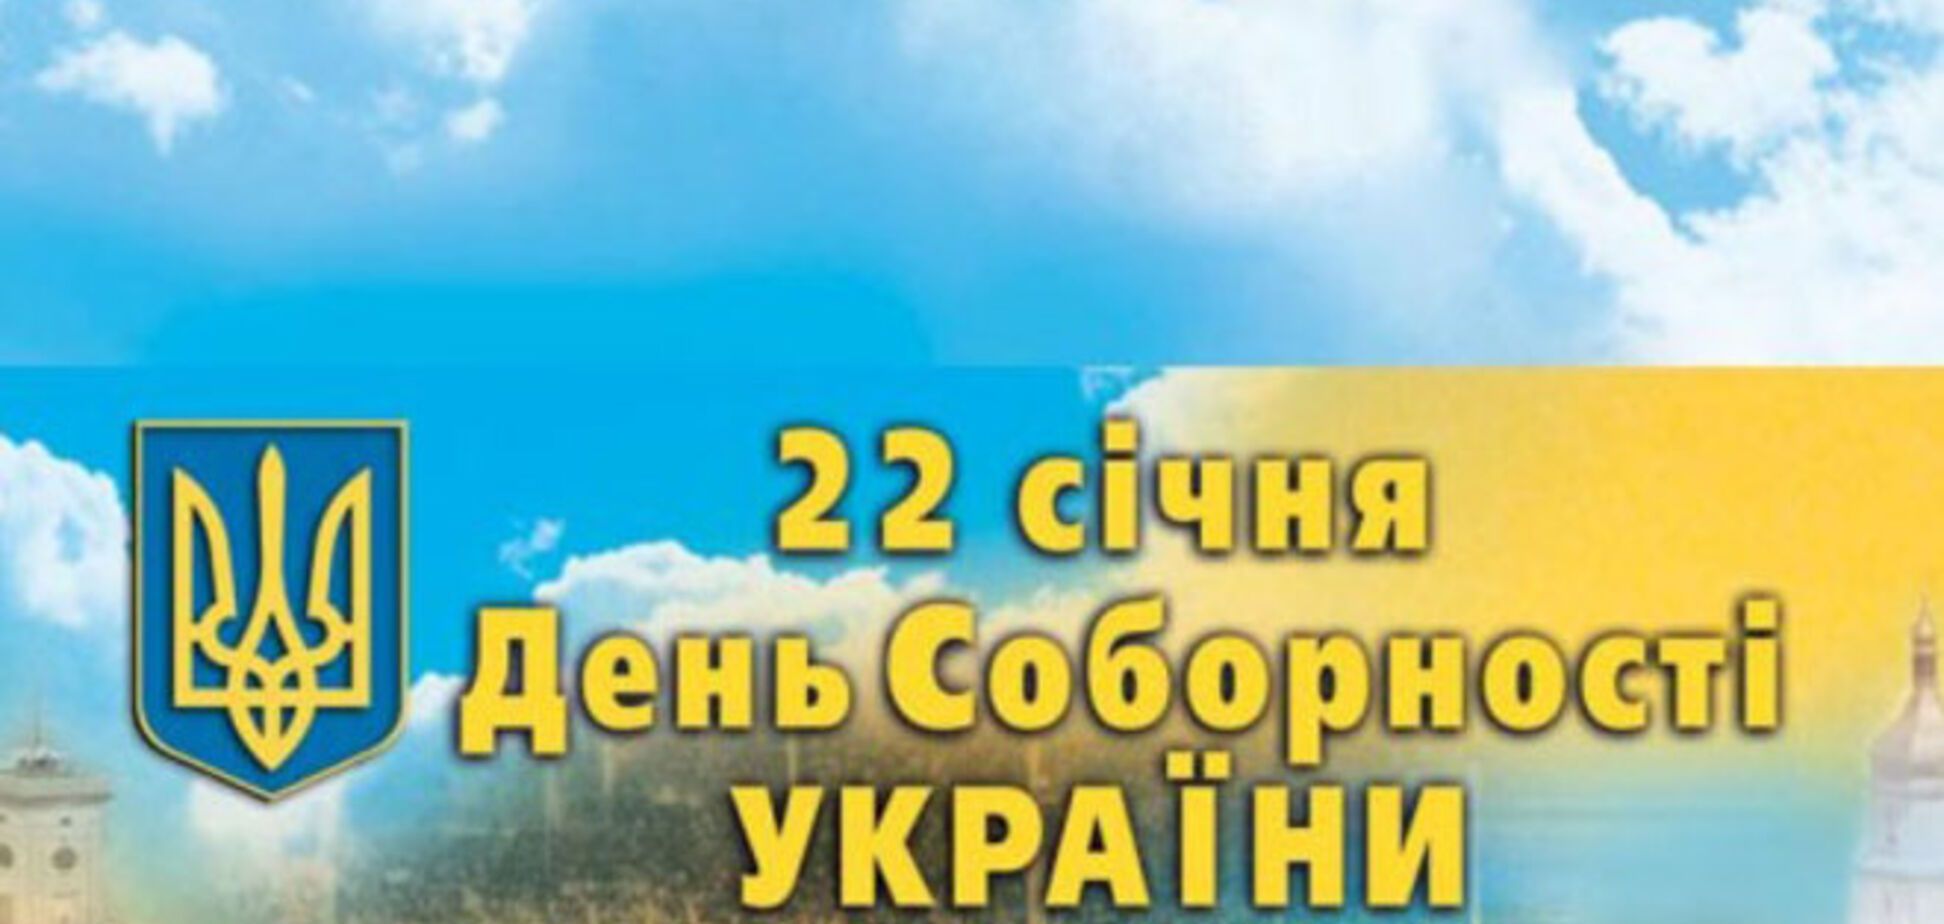 Порошенко рассказал, как в Украине будет праздноваться День соборности